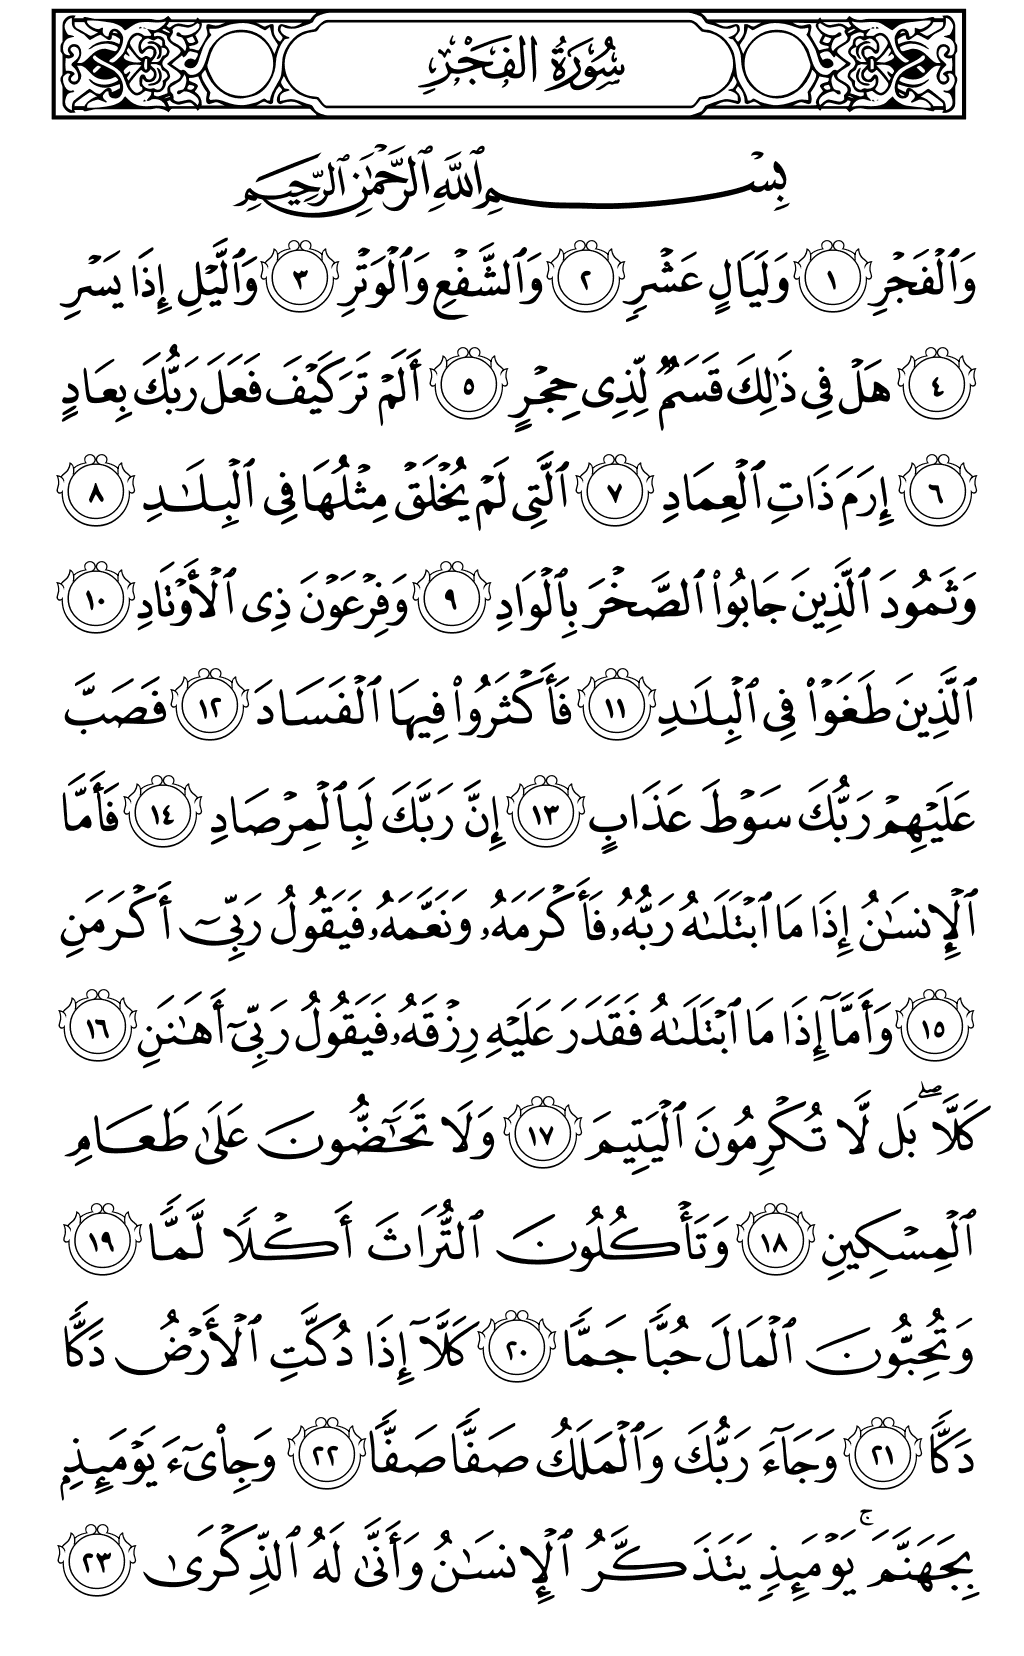 الصفحة رقم 593 من القرآن الكريم